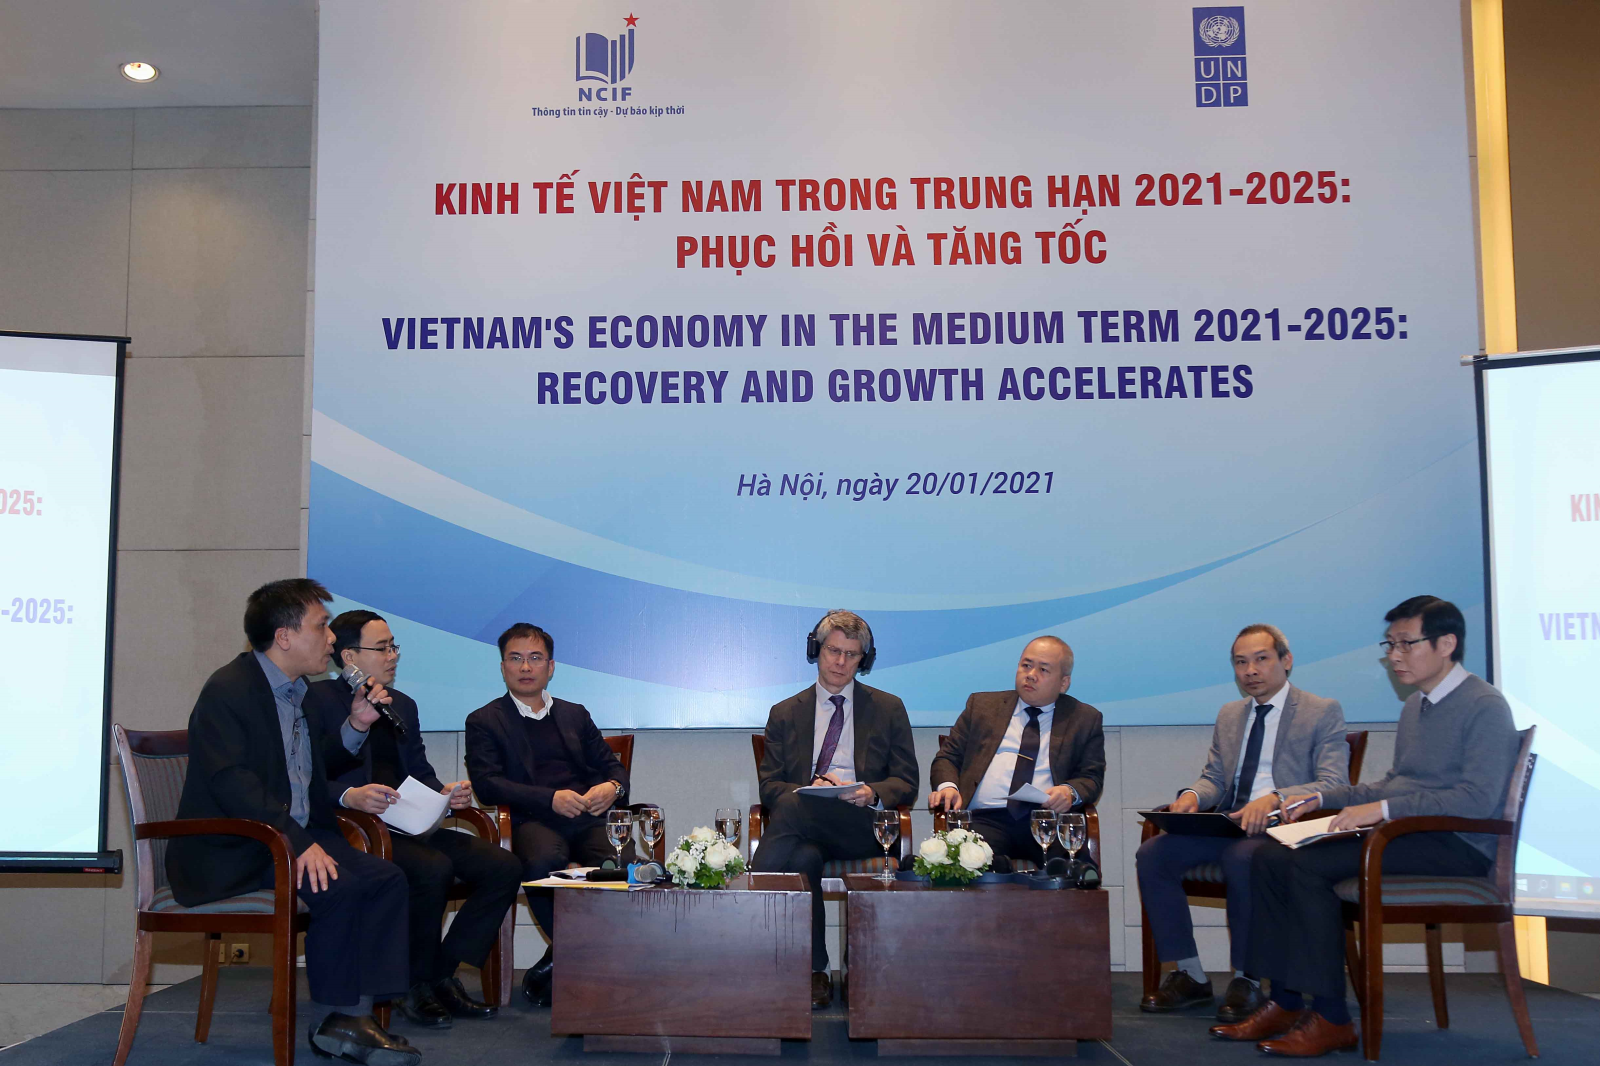 Kinh tế Việt Nam trong trung hạn 2021-2025: phục hồi và tăng tốc: